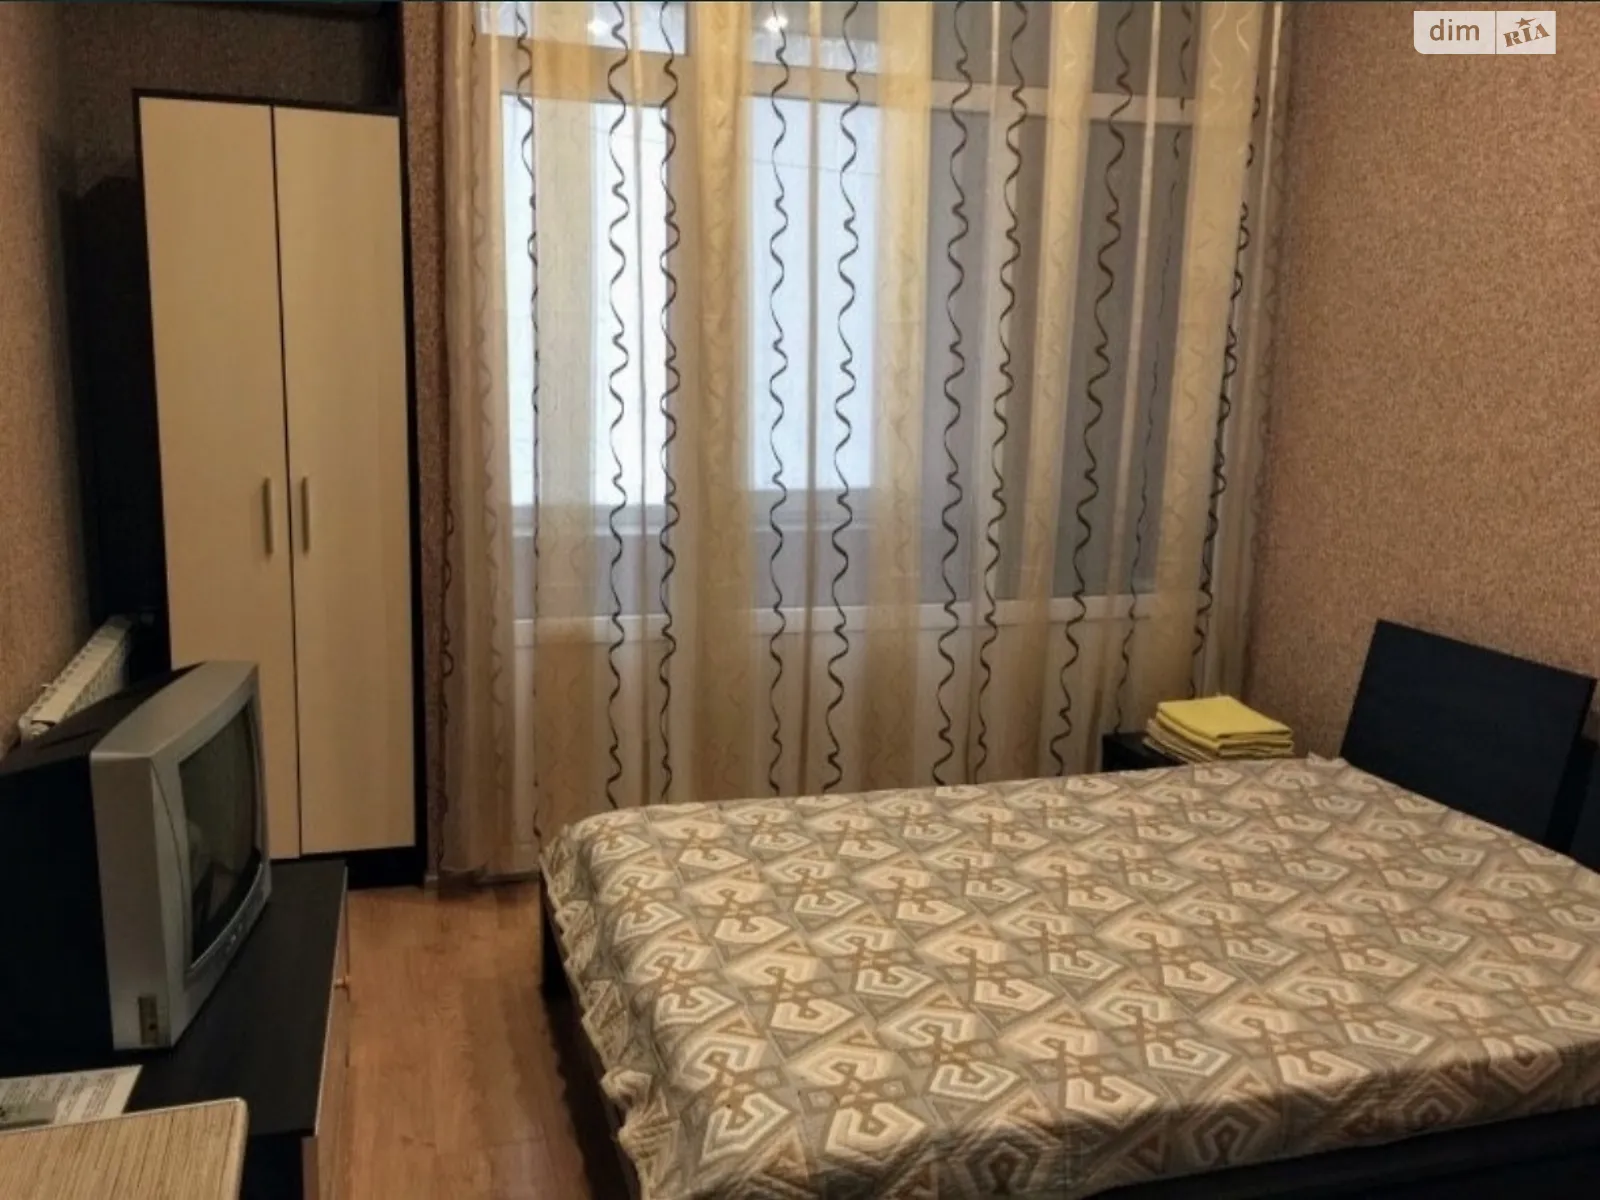 1-кімнатна квартира у Запоріжжі, цена: 490 грн - фото 1